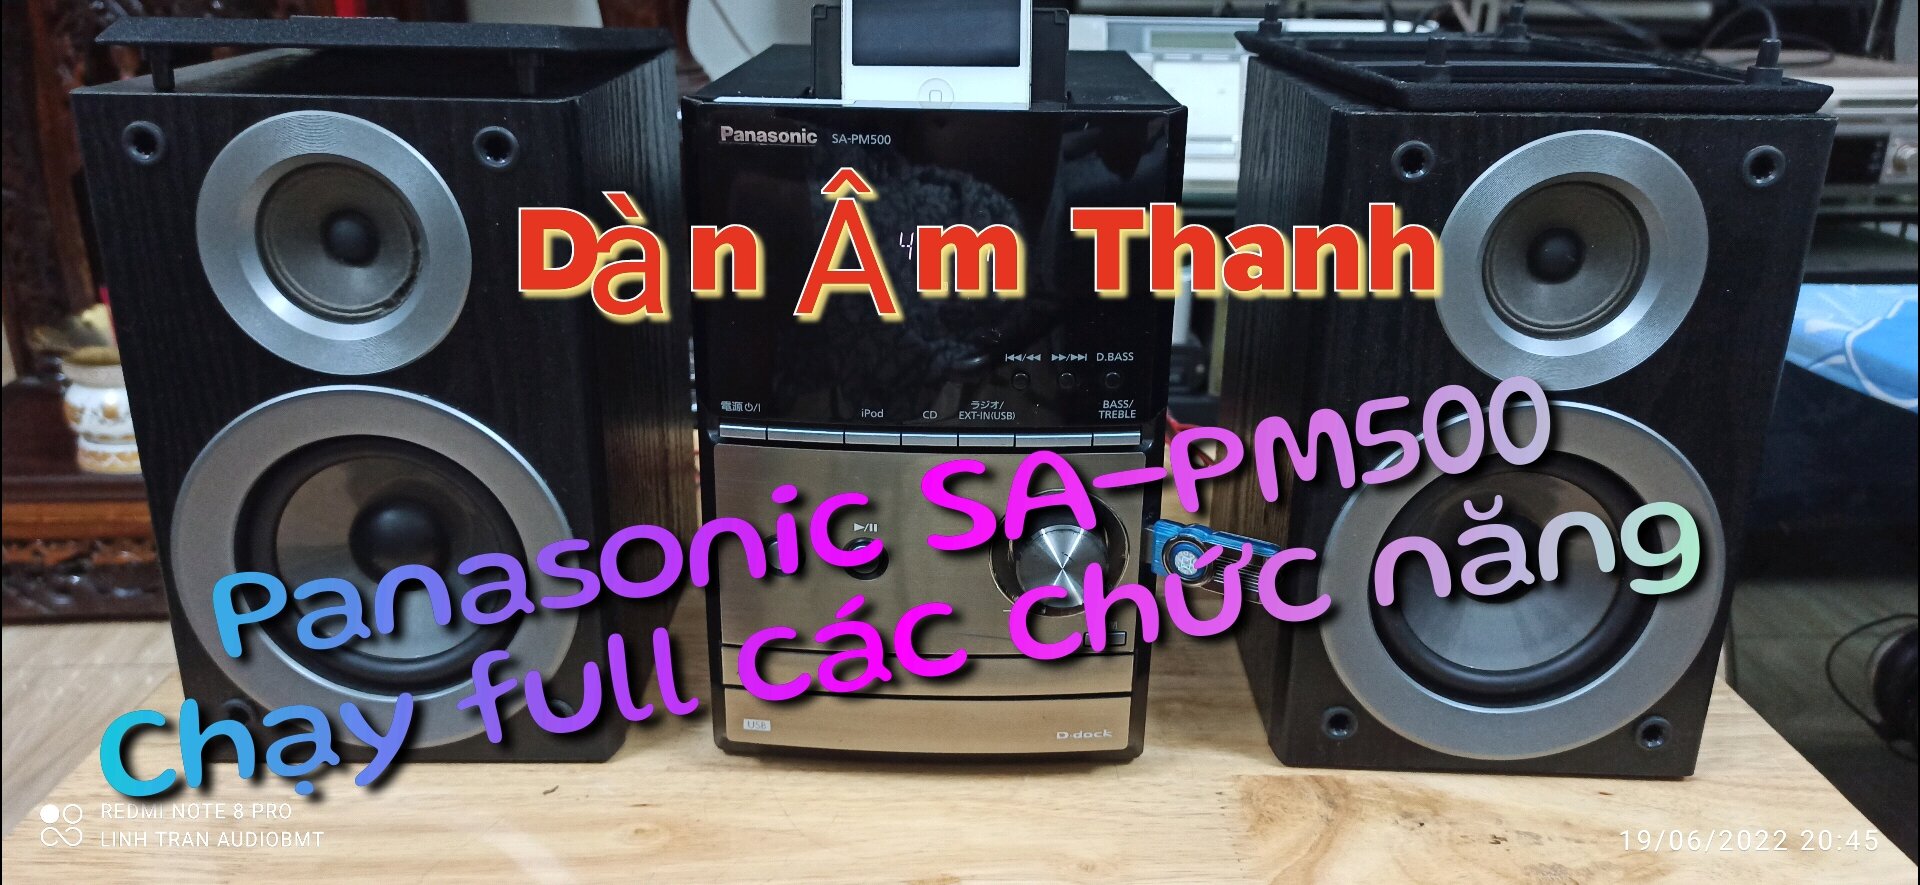 Dàn Âm Thanh Panasonic SA-PM500-Kèm Remote học